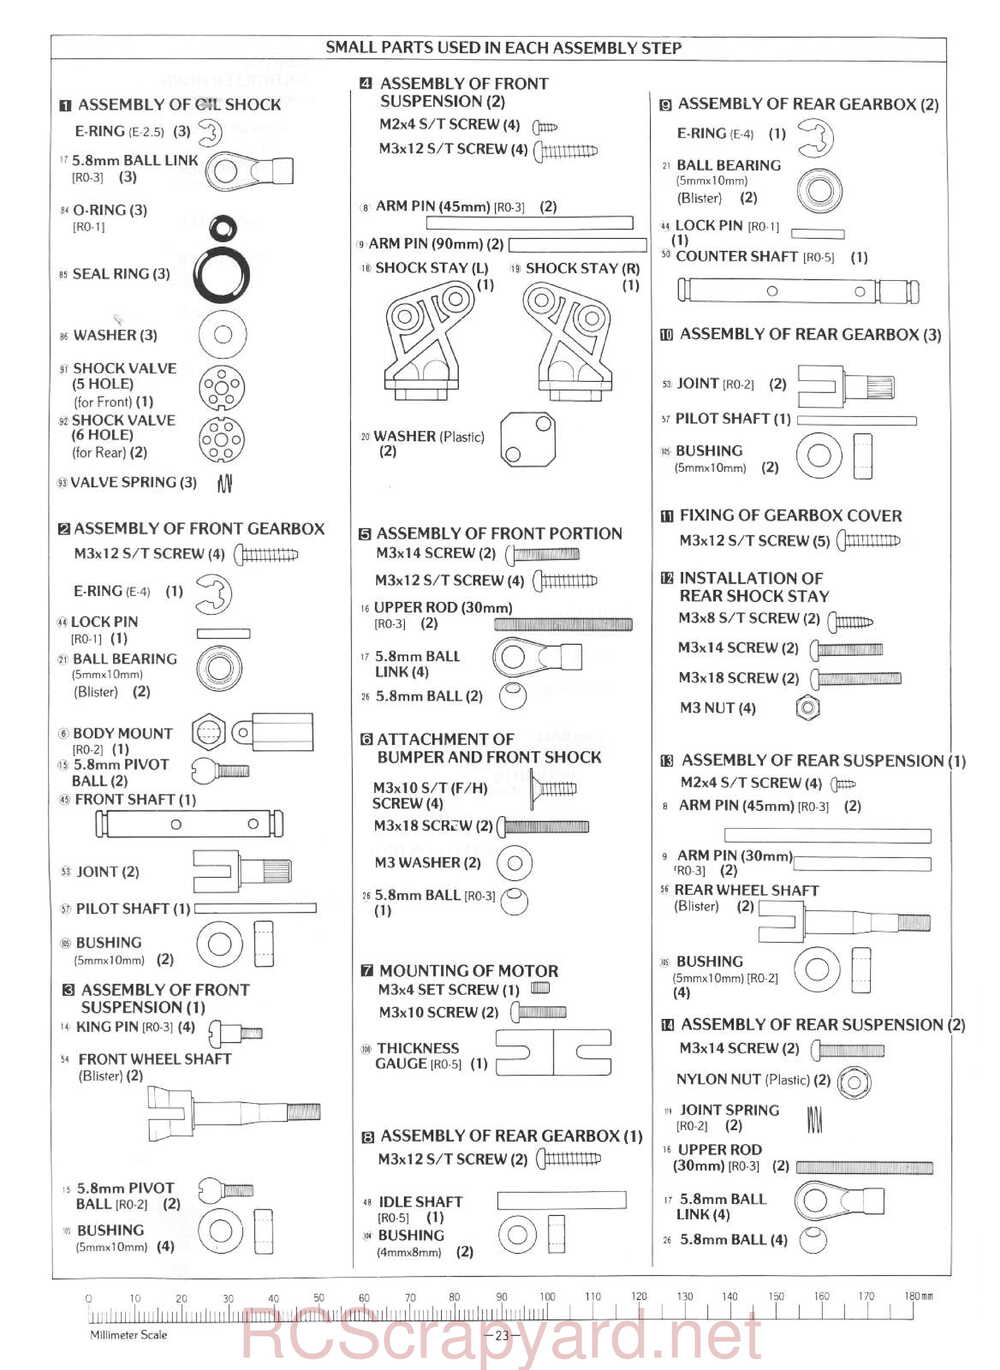 Kyosho - 3101 - Rocky - Manual - Page 23